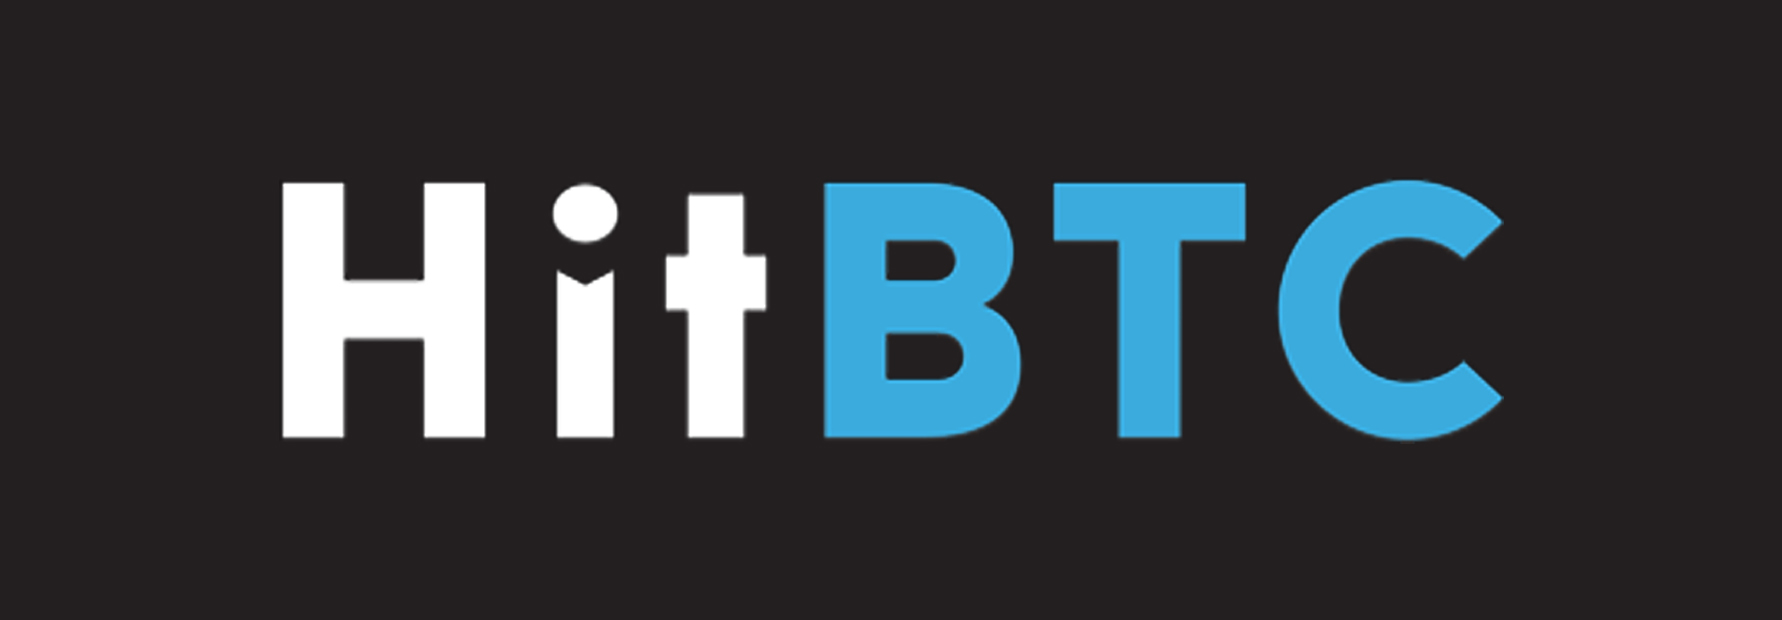 hitbtc-logo.jpg